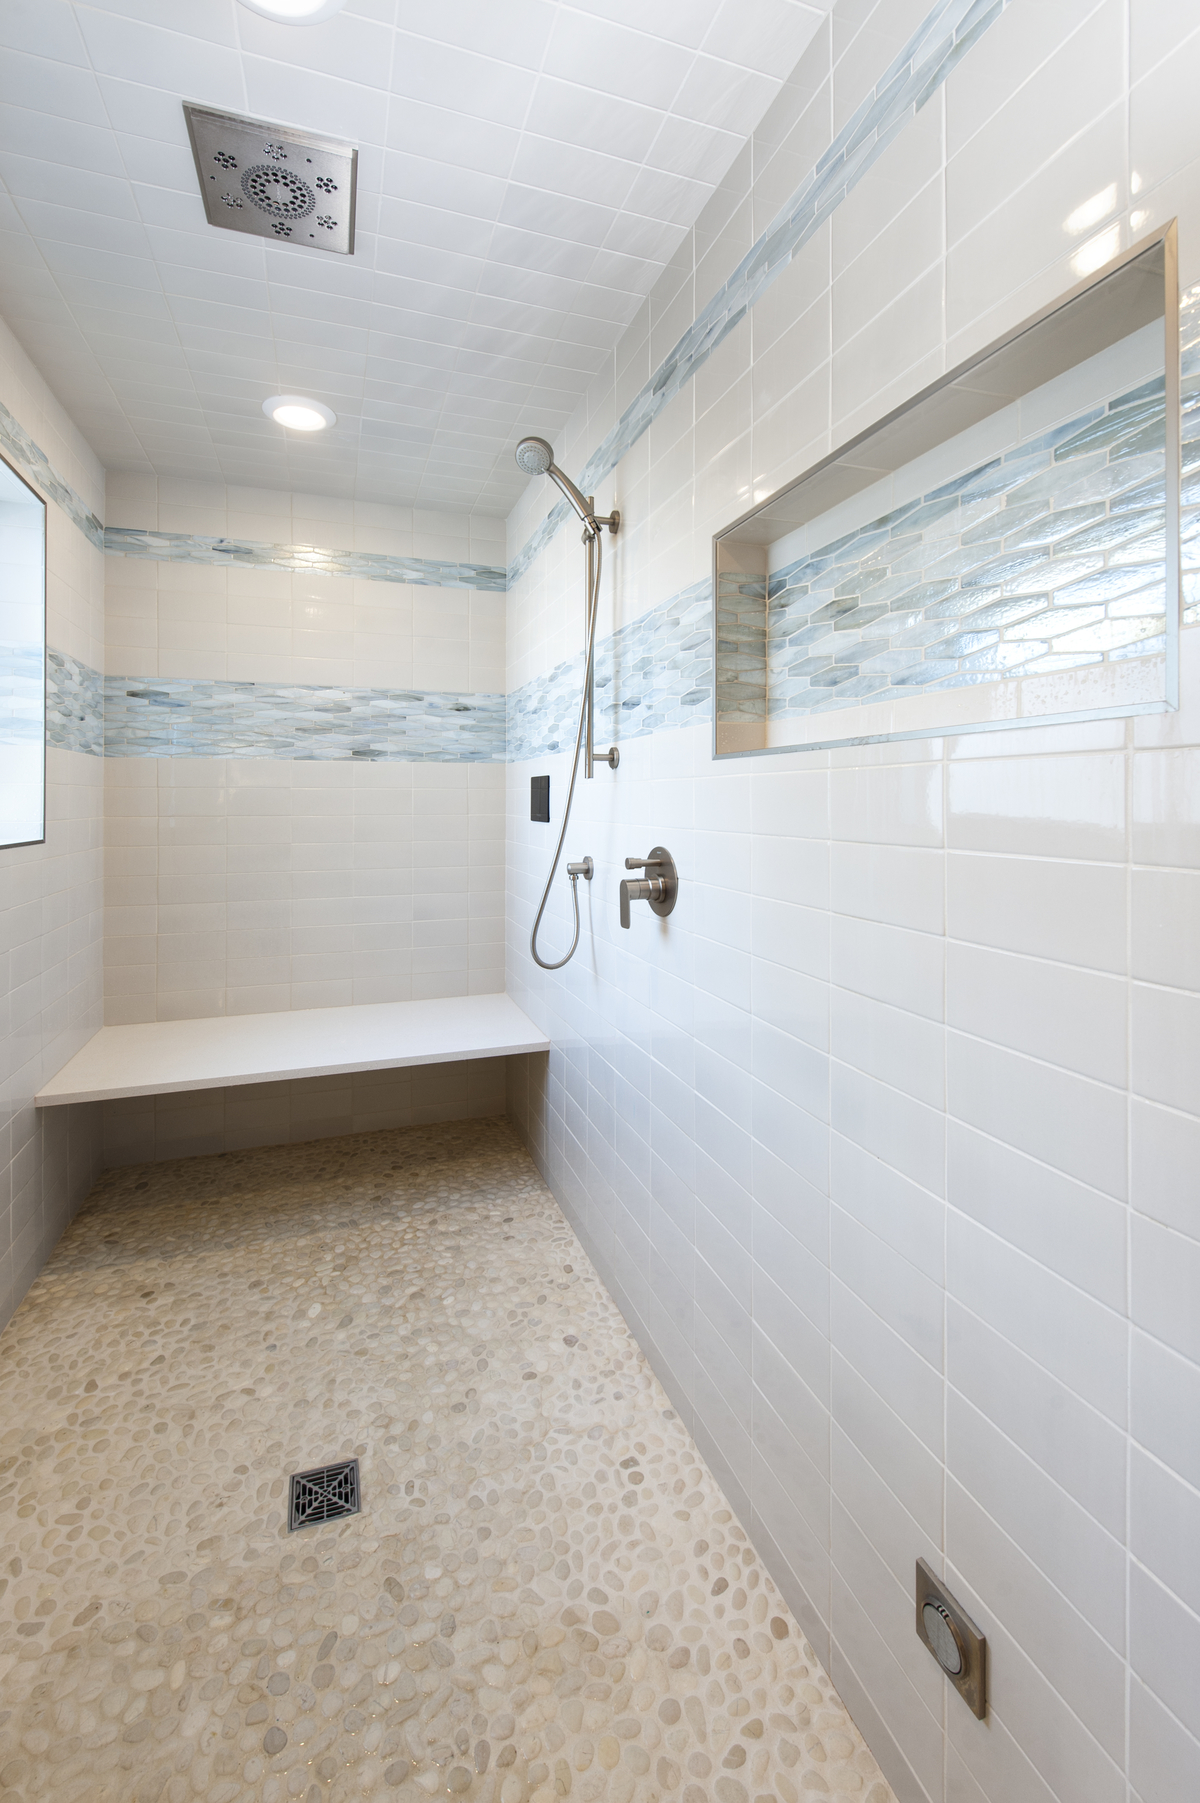 walk-in tiled steam shower, pebble tile floor, built-in ledge